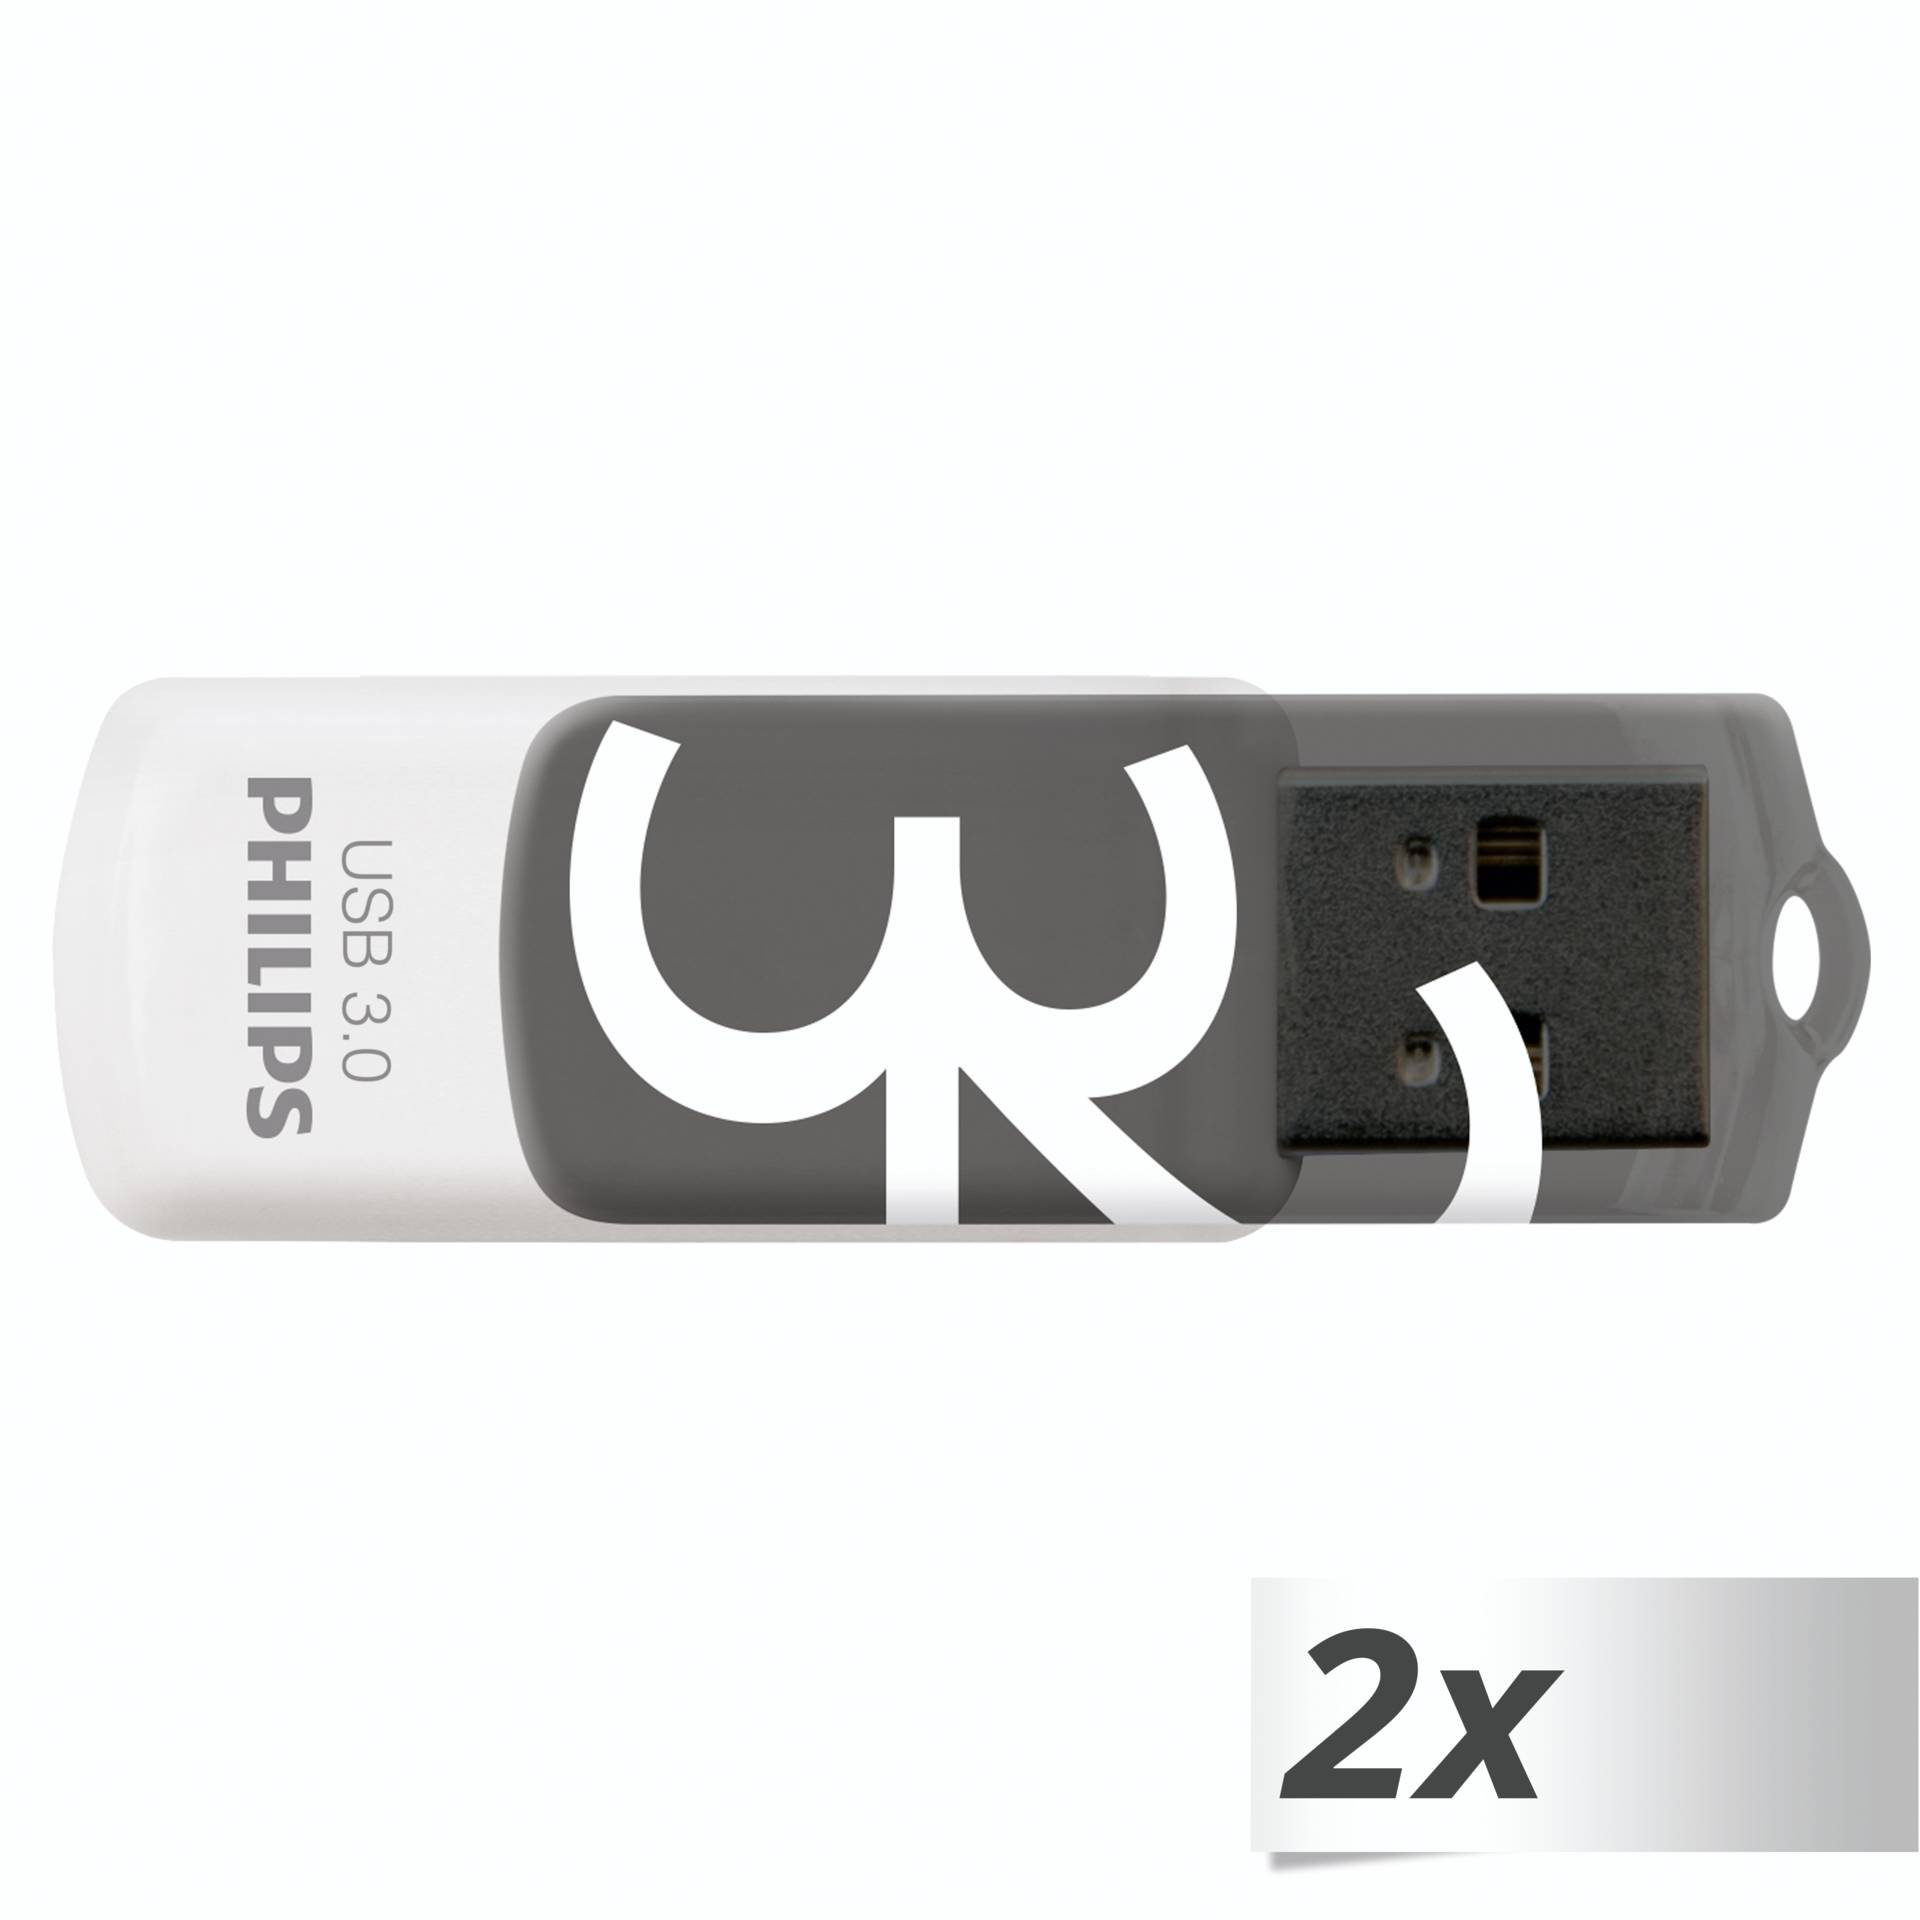 32 GB Philips Vivid grau USB-Stick, USB-A 3.0